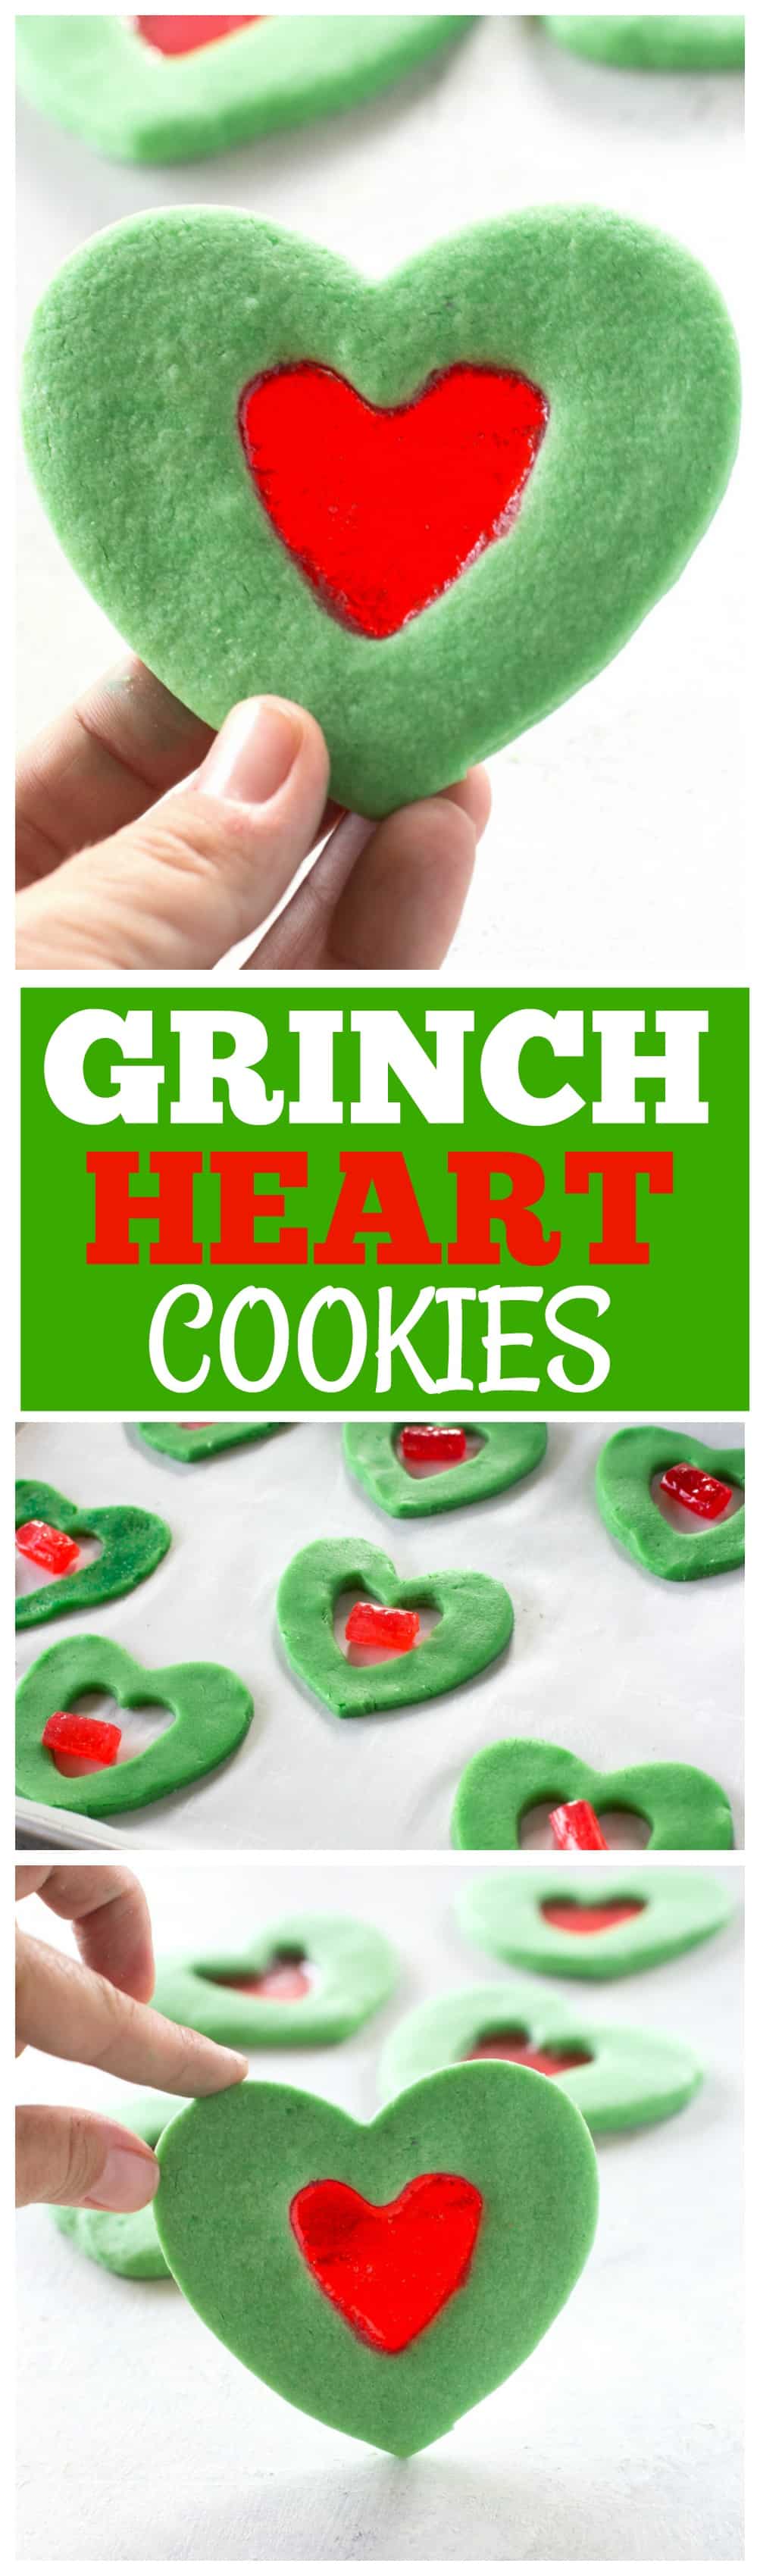 Ces biscuits Grinch Heart sont de petites friandises magiques que vous pouvez préparer à Noël avec vos enfants.  Biscuits au sucre teints en vert avec un cœur rouge en vitrail au milieu.  #noël #grinch #coeur #biscuits #dessert #sucre 